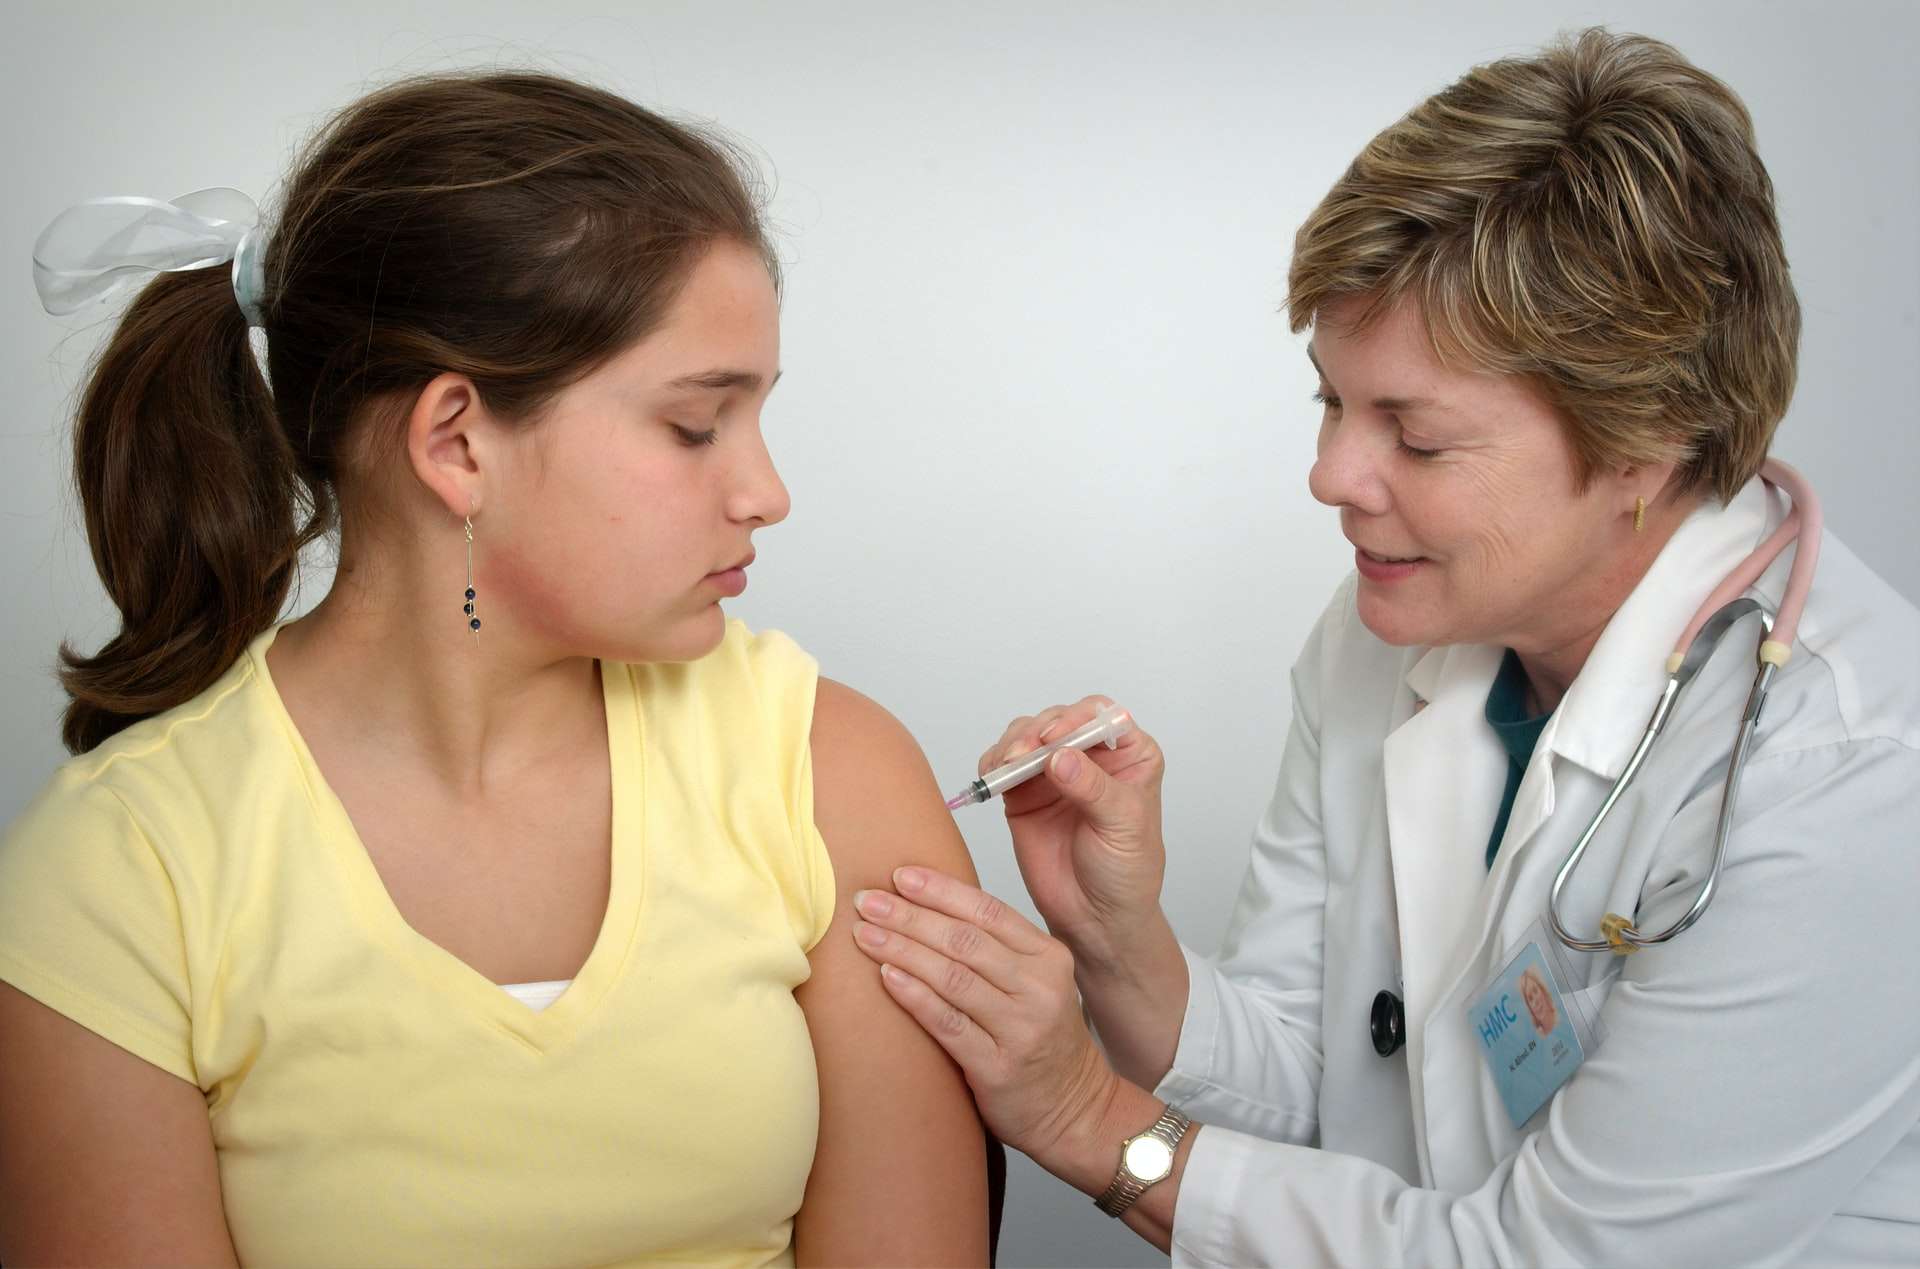 Bir baytar-viroloqun kütləvi vaksinasiyanın zərərli olduğuna dair sübut olaraq göstərdiyi iddialar